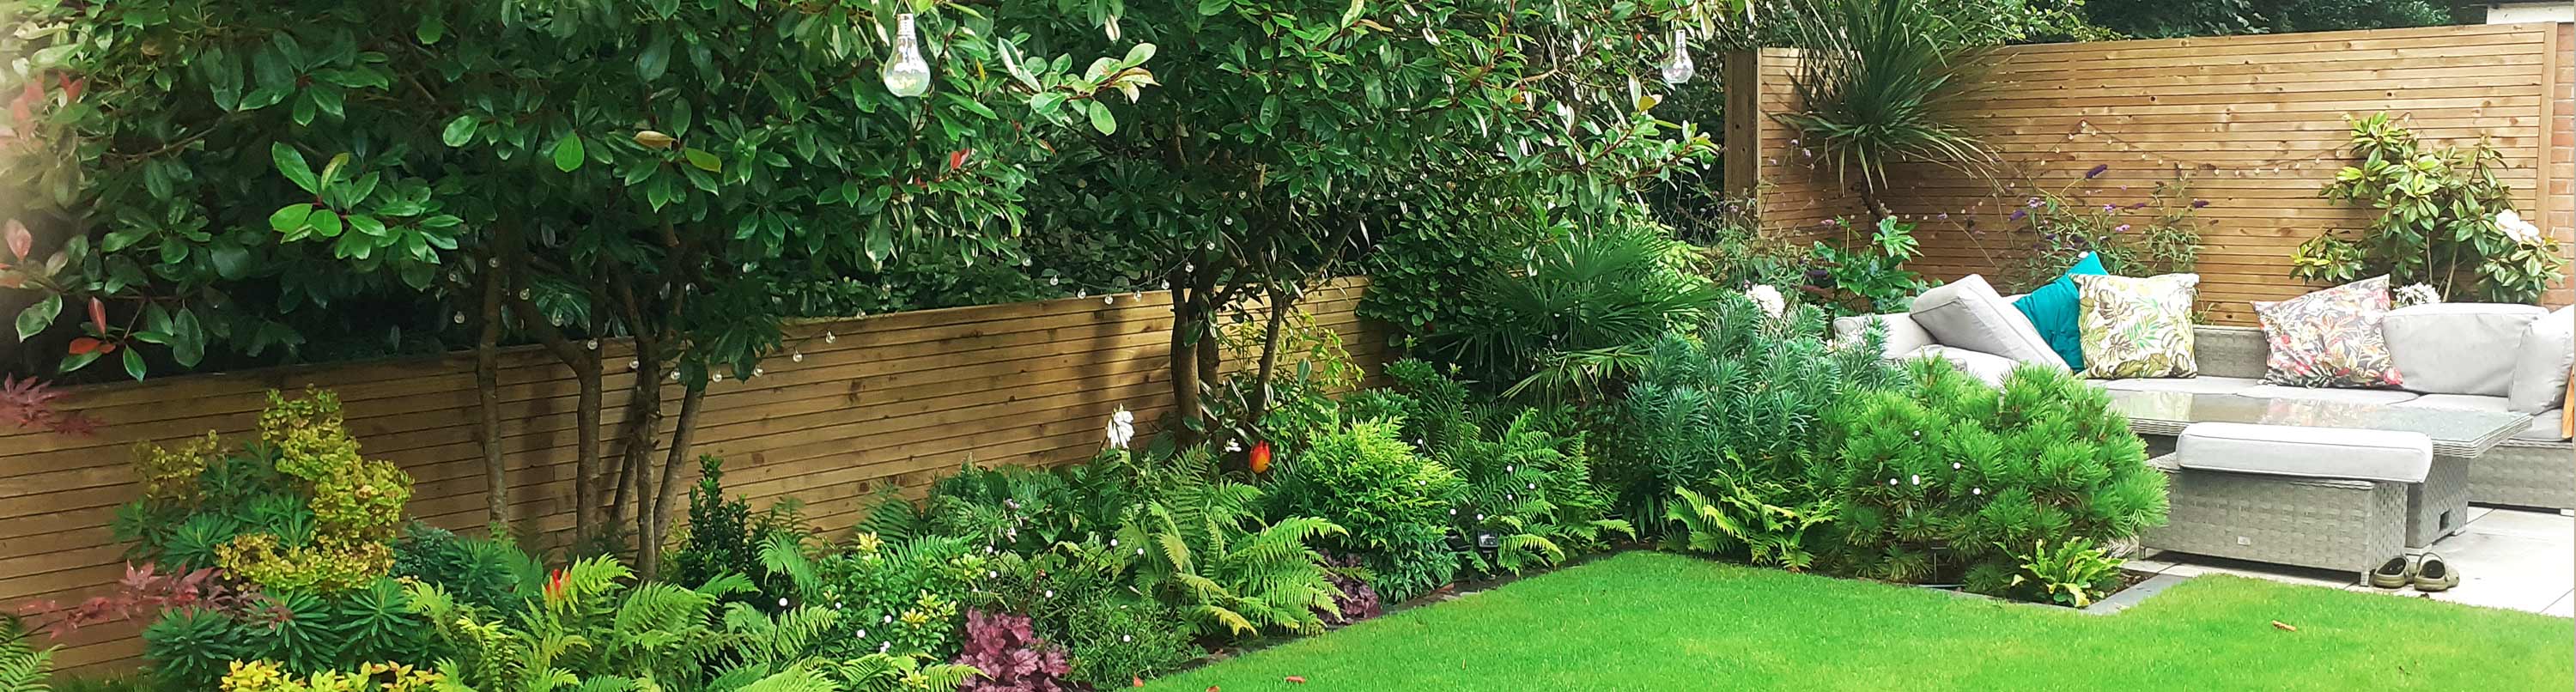 landscope garden design - Chelmsford Essex - slide 2